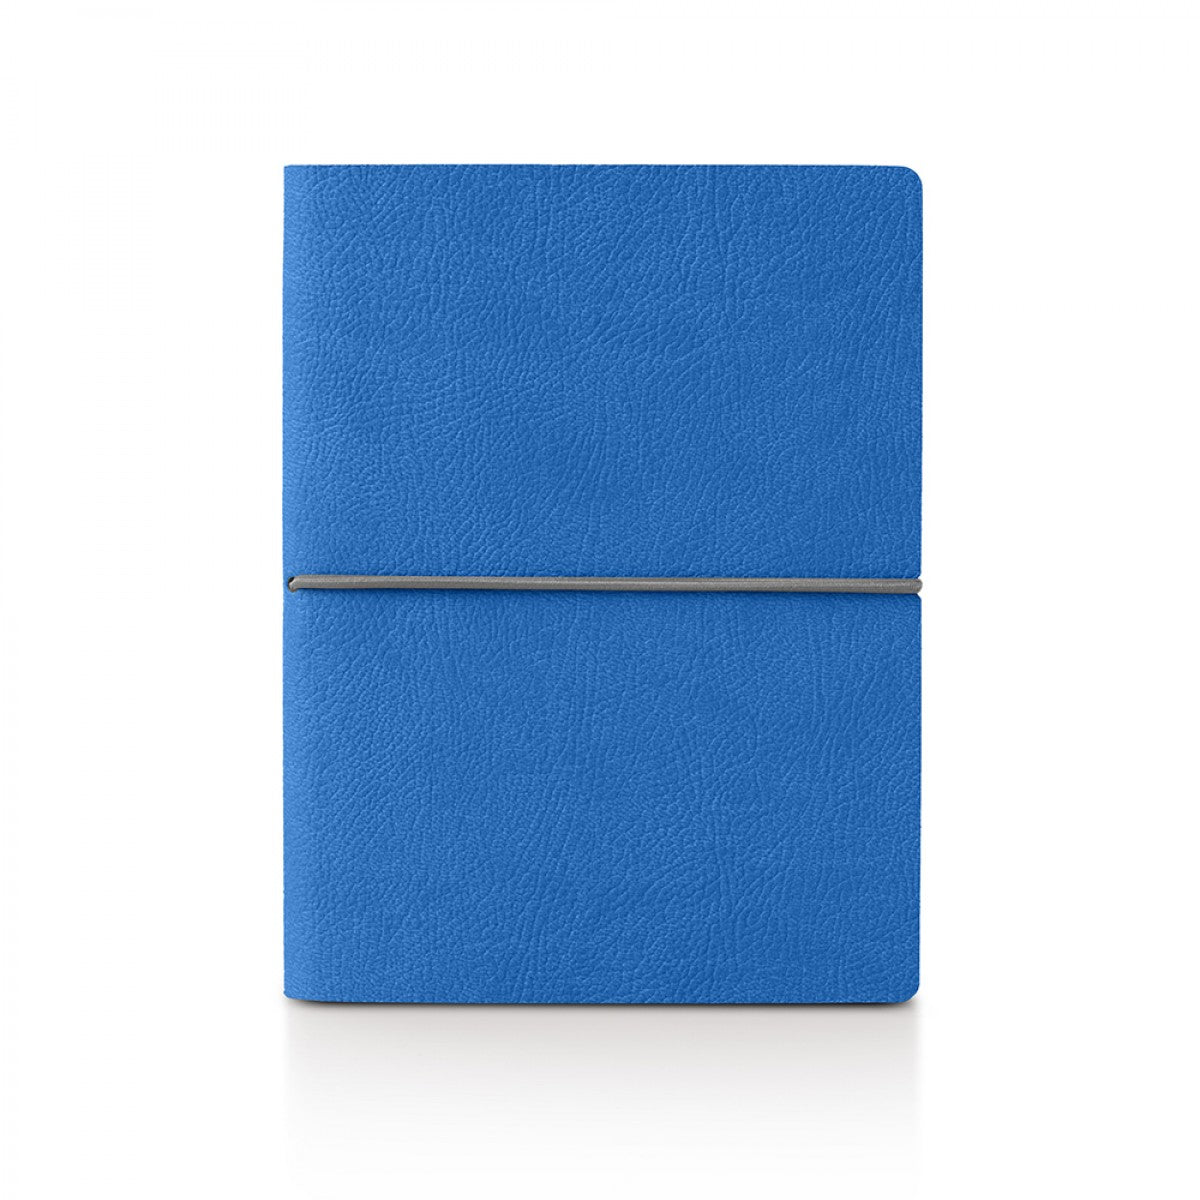 Ciak Smartbook Note Book Blue 6" by 8"